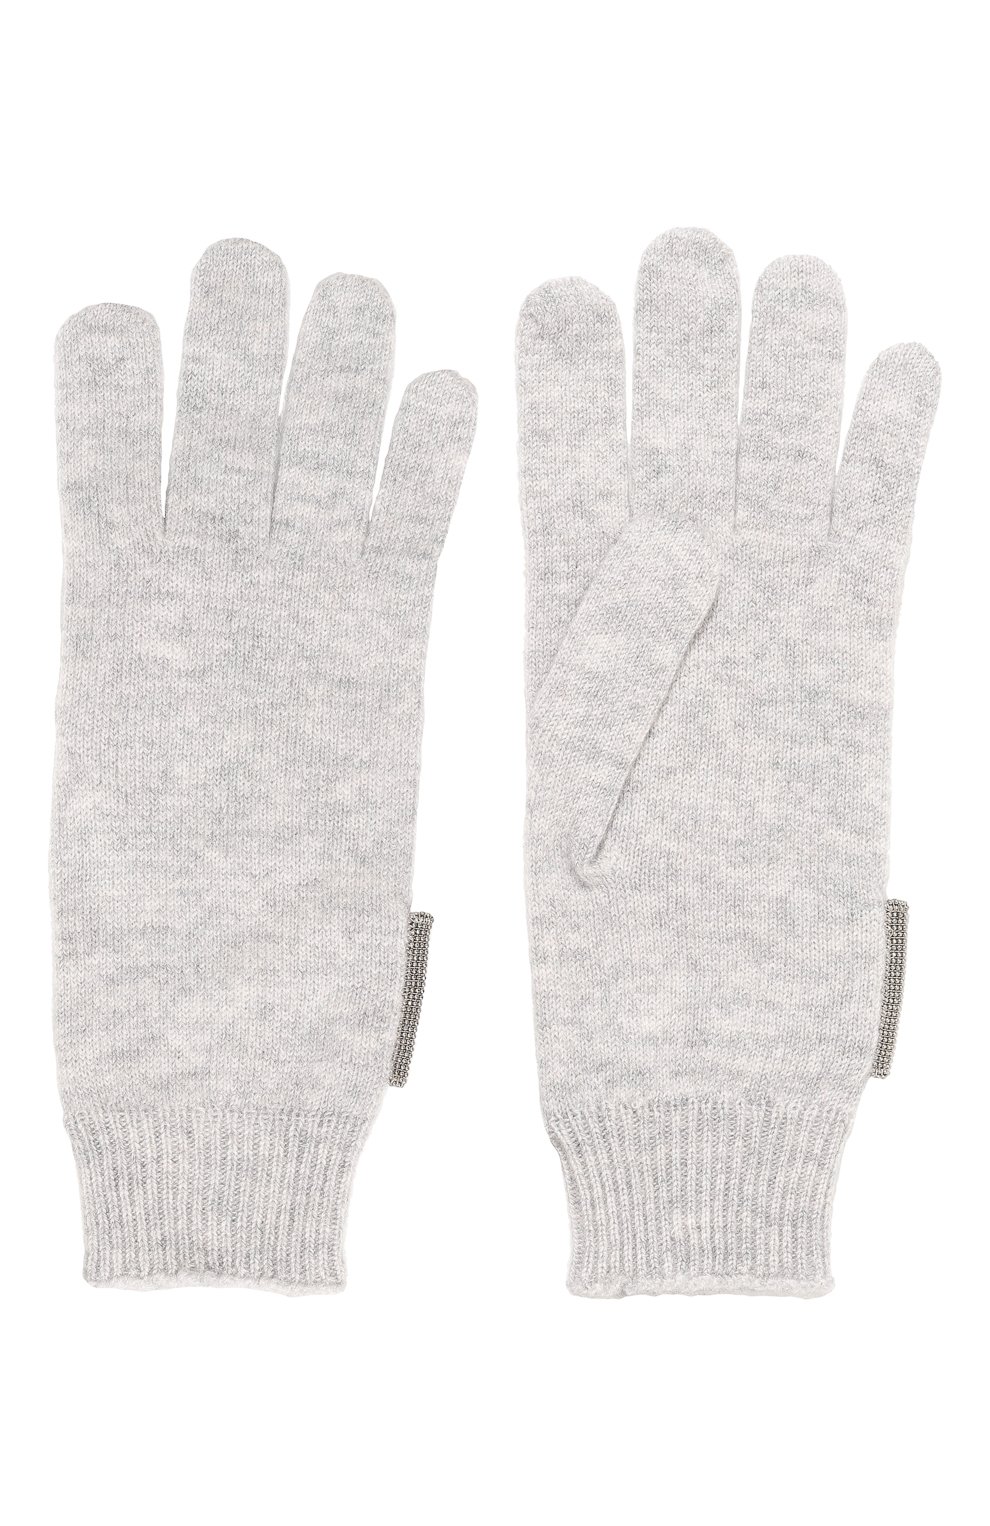 Детские кашемировые перчатки BRUNELLO CUCINELLI светло-серого цвета, арт. B12M14589B | Фото 2 (Материал: Текстиль, Кашемир, Шерсть)